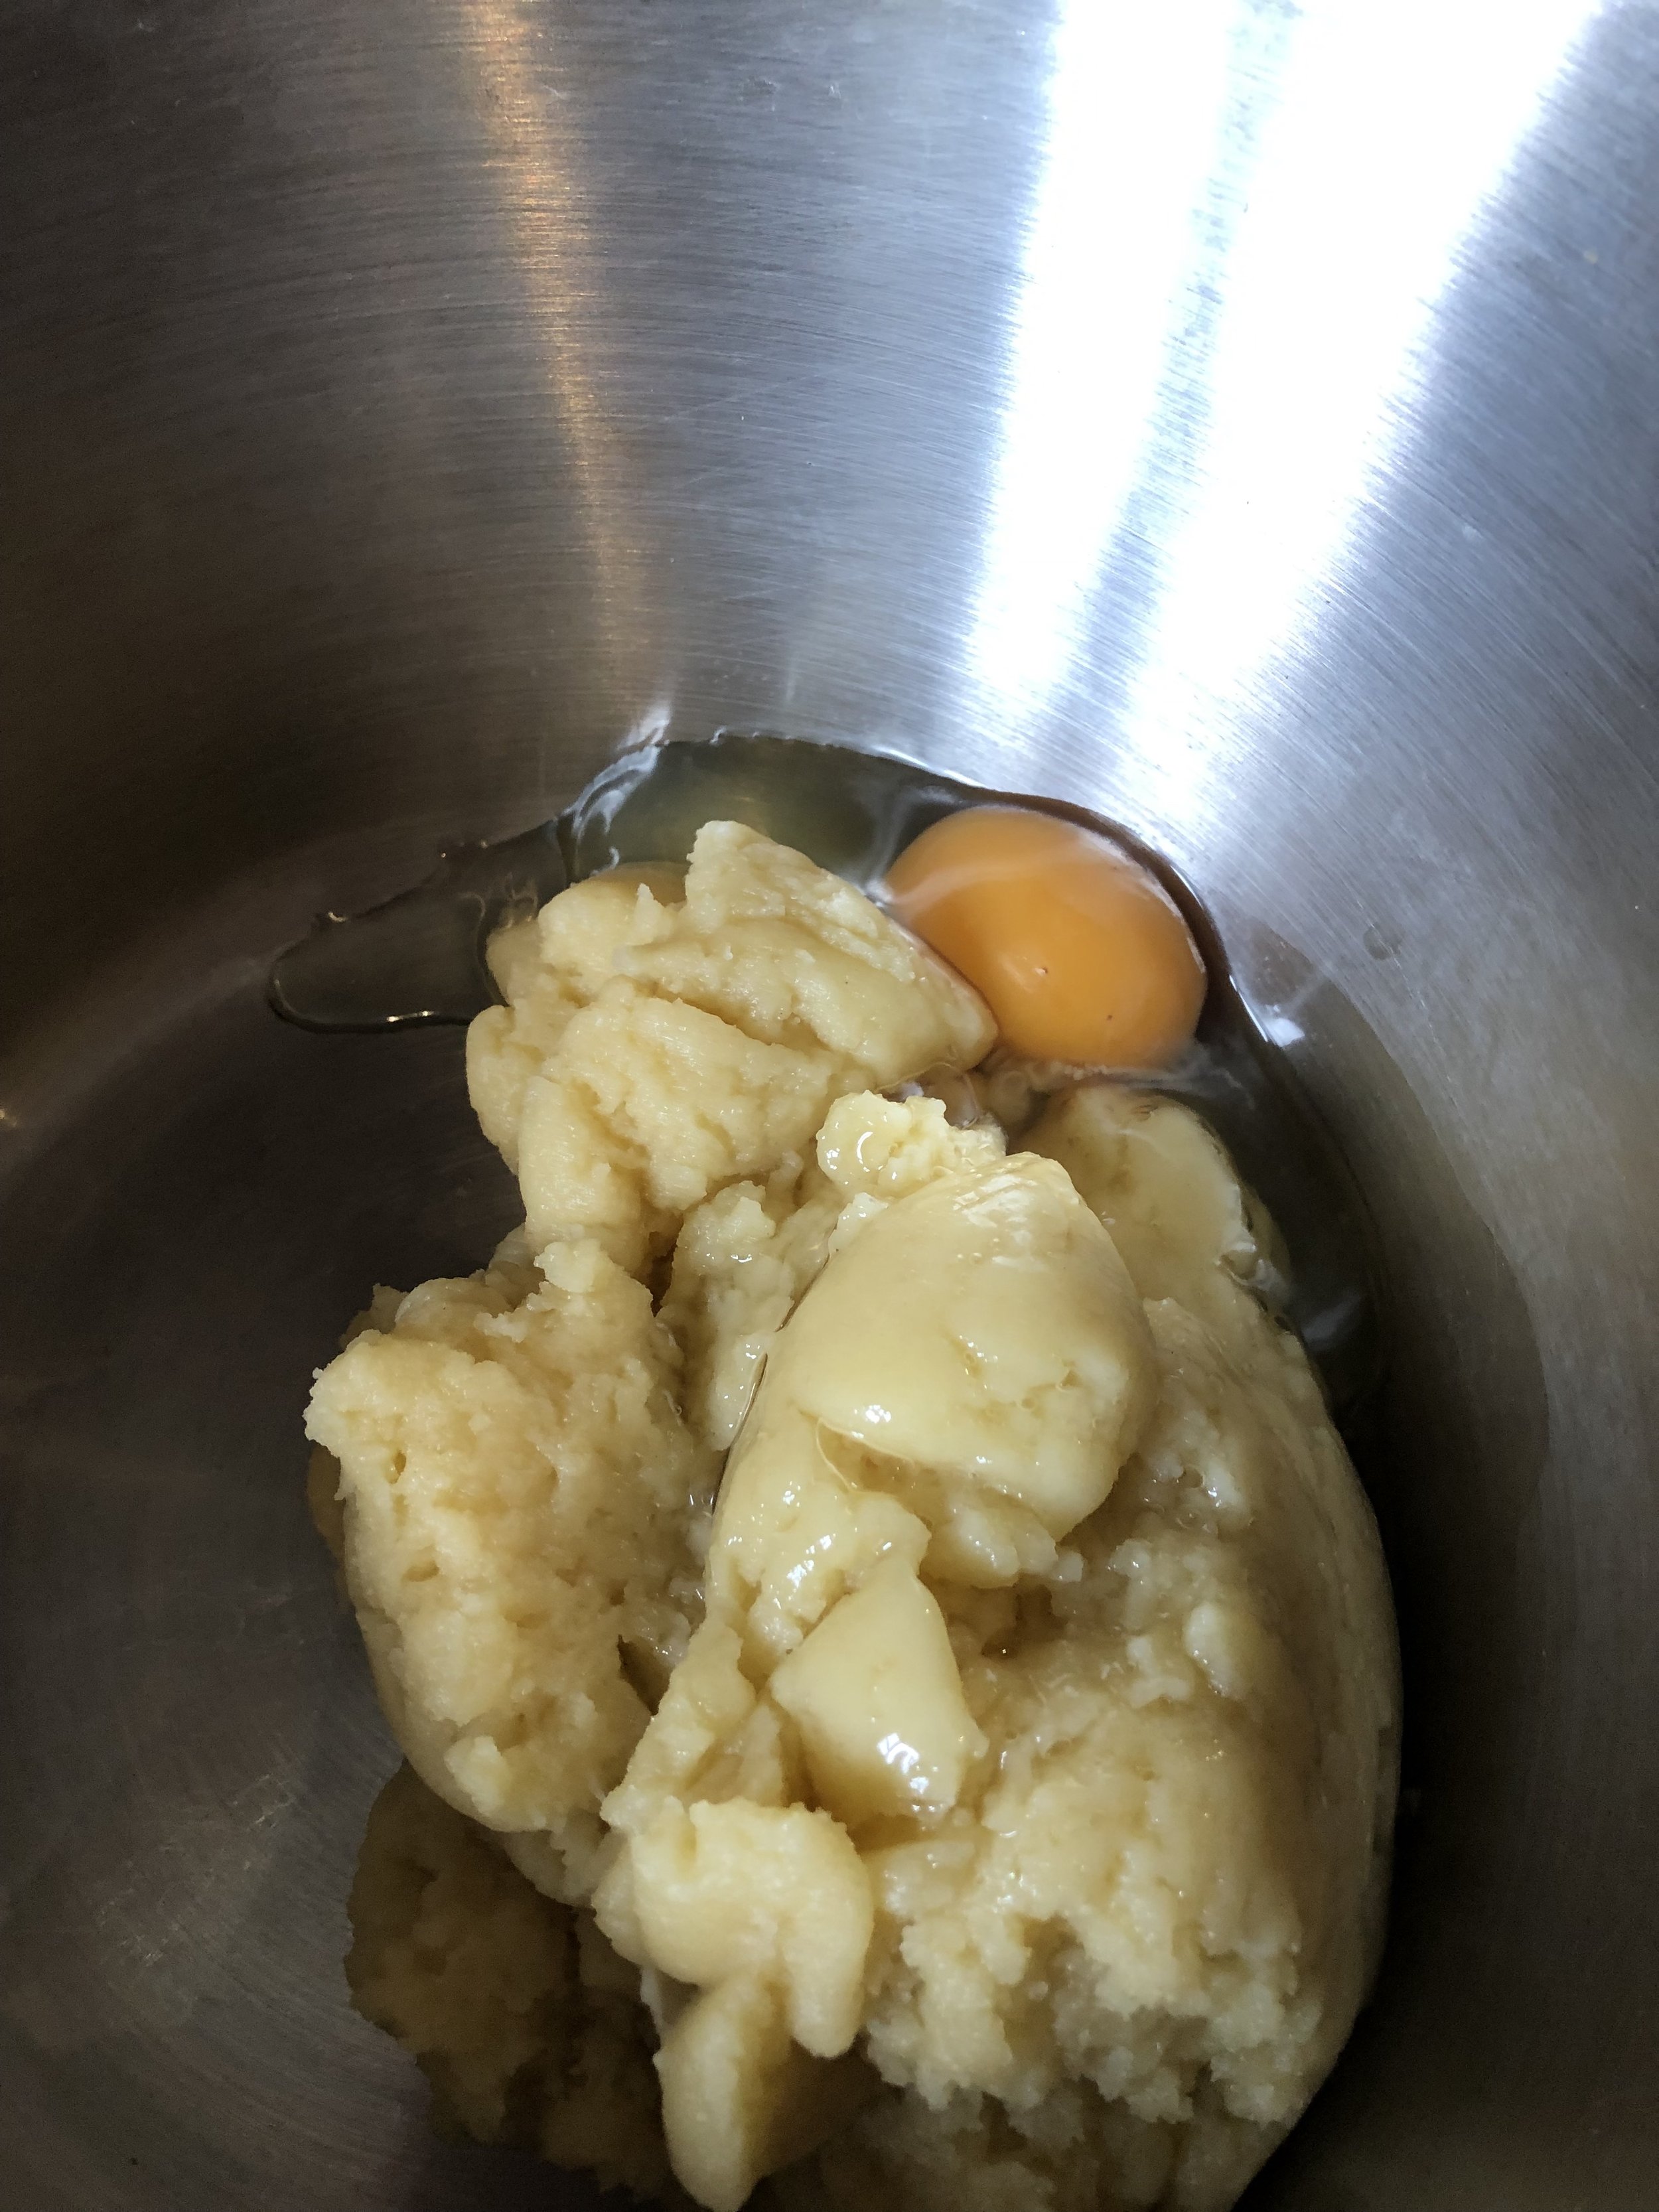 Gougères mix plus eggs.jpg